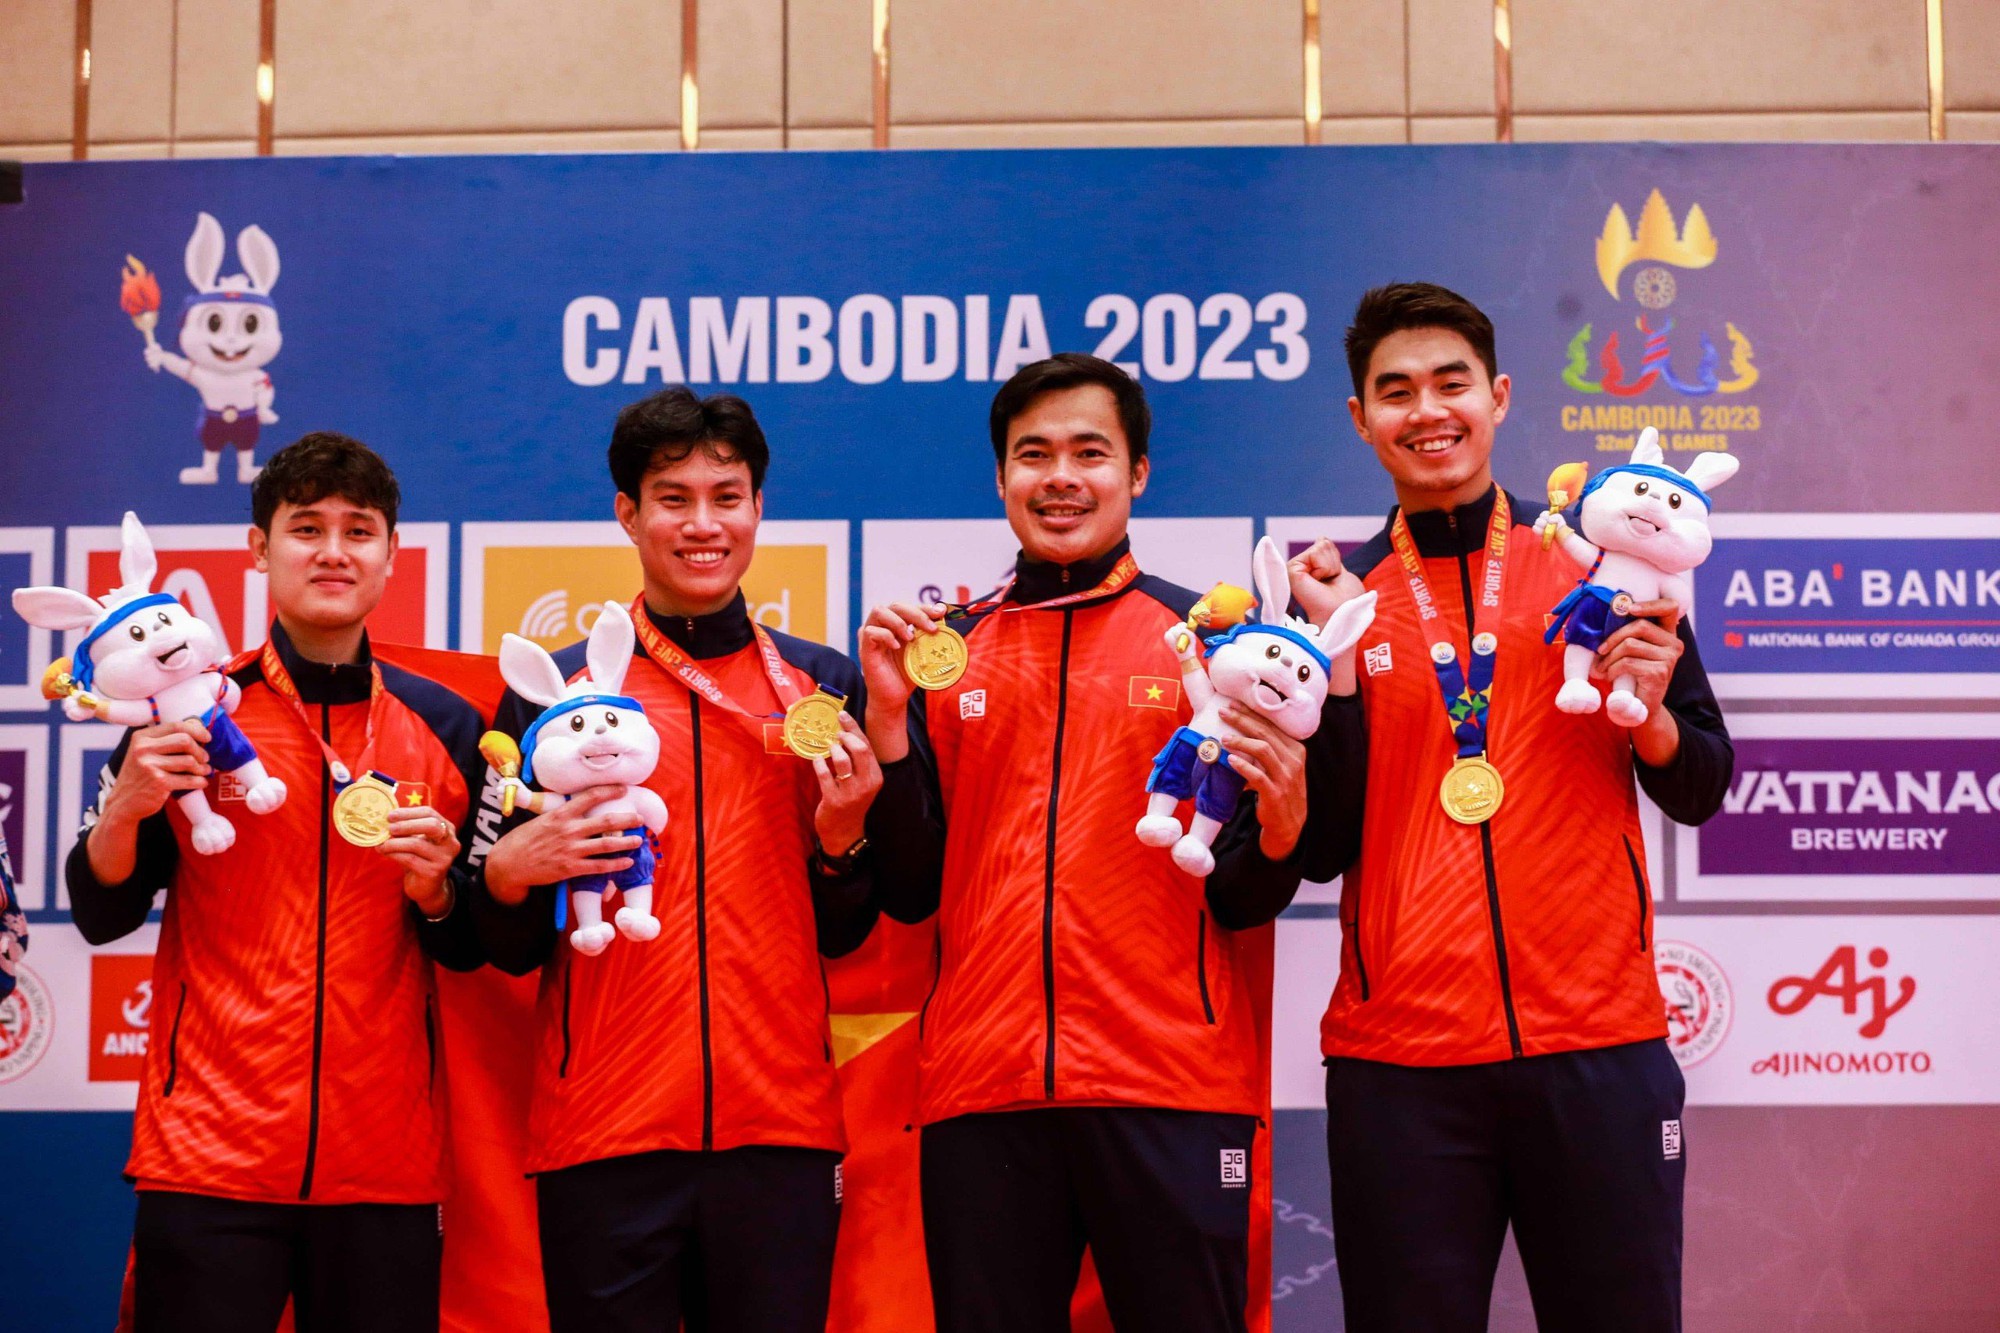 Thể thao Việt Nam lần đầu tiên dẫn đầu bảng tổng sắp khi thi đấu ở nước ngoài tại Đại hội thể thao lớn khu vực Đông Nam Á - SEA Games 32, tổ chức tại Campuchia tháng 5.2023.